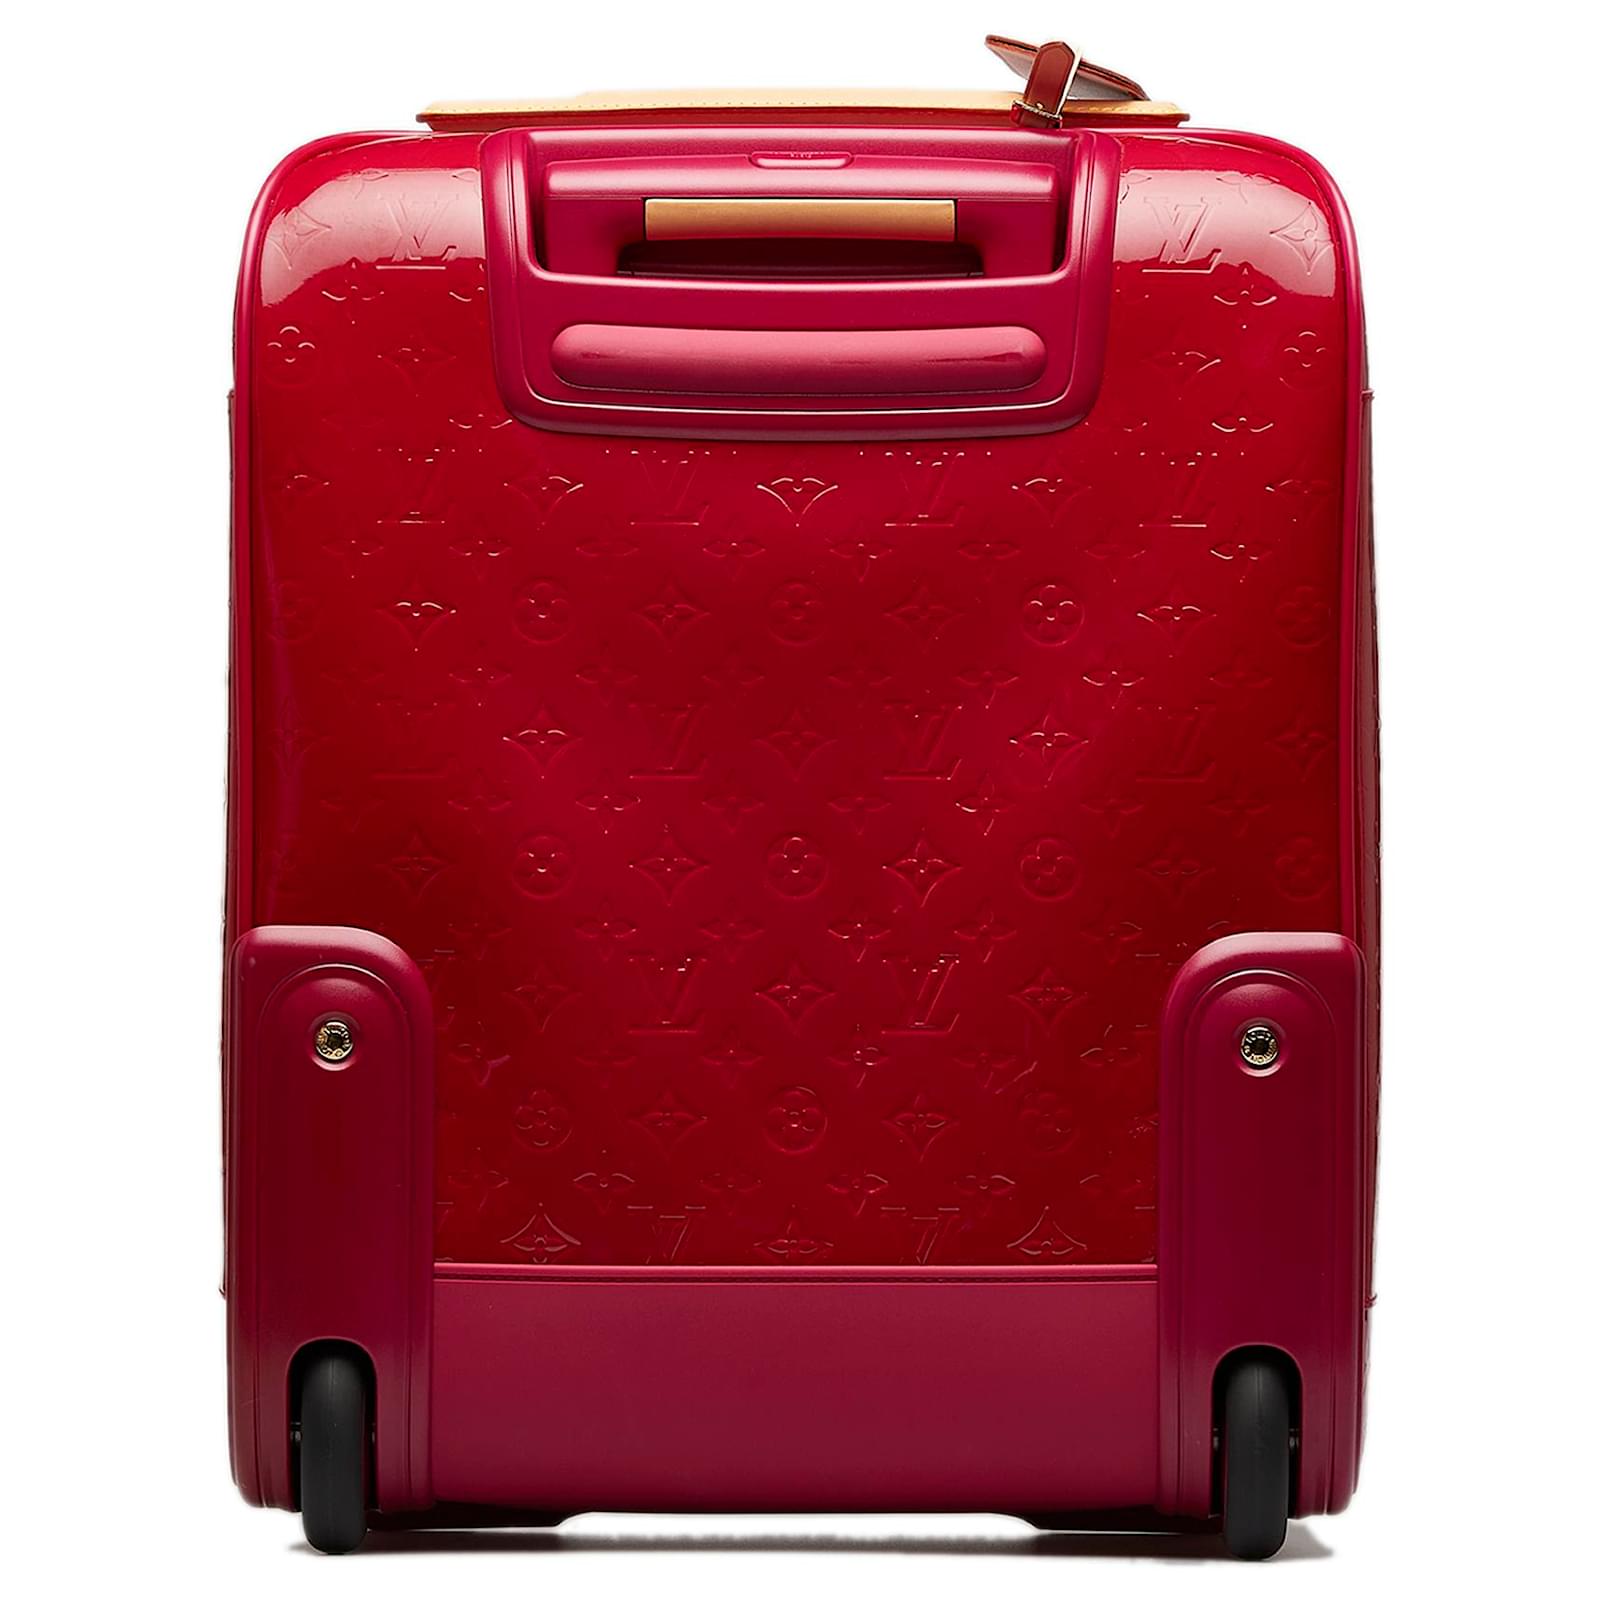 Louis Vuitton Monogram Pegase Luggage Bag 45 Brown